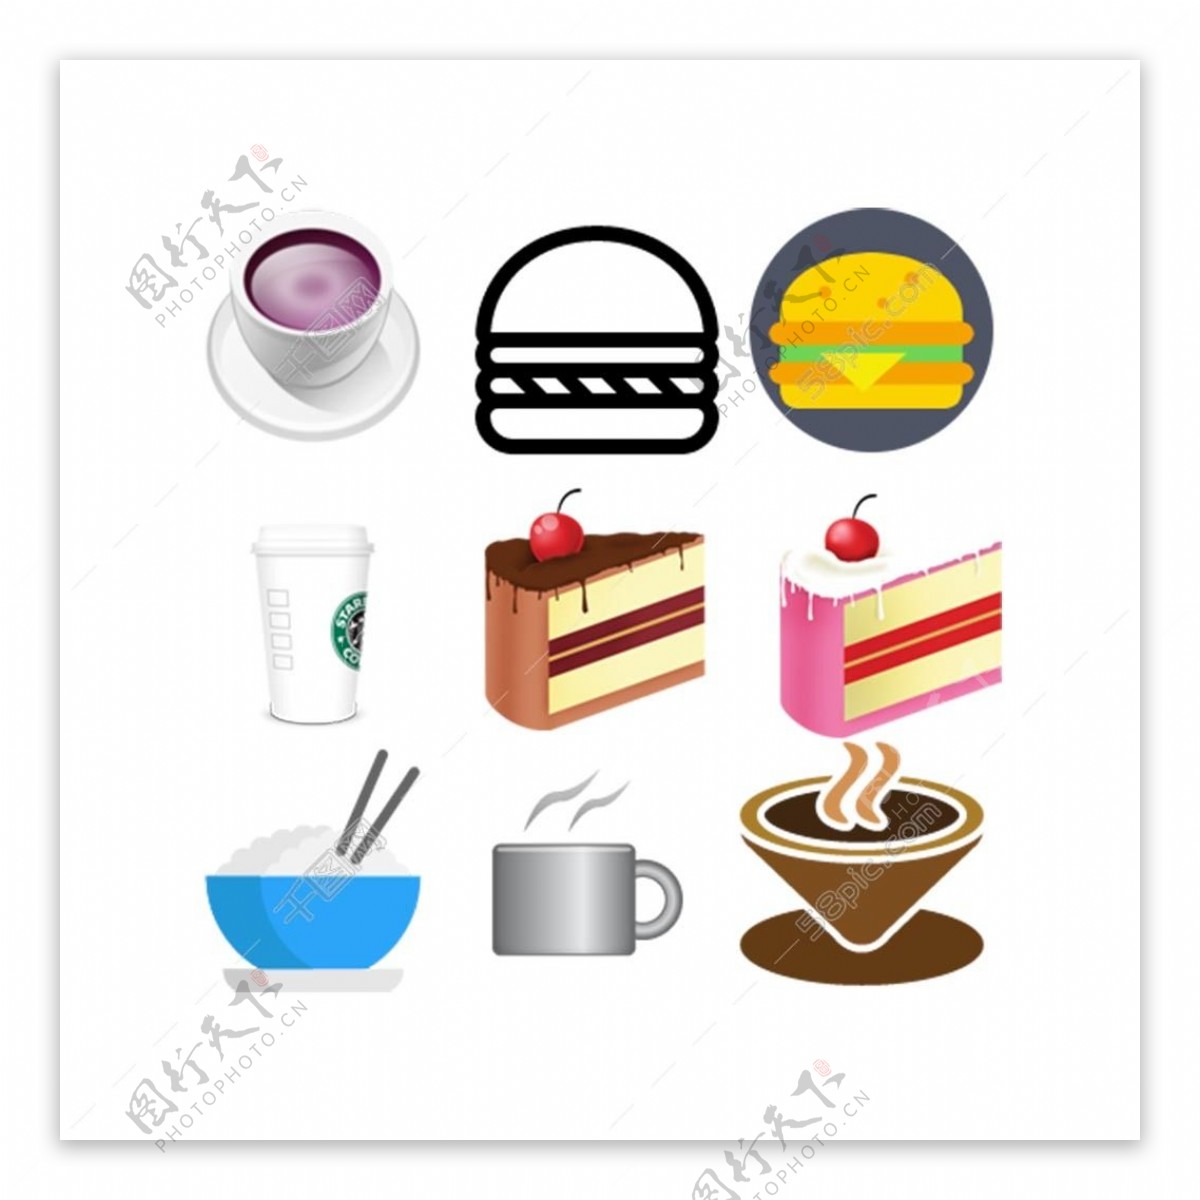 食品厨具简洁矢量icon免费下载